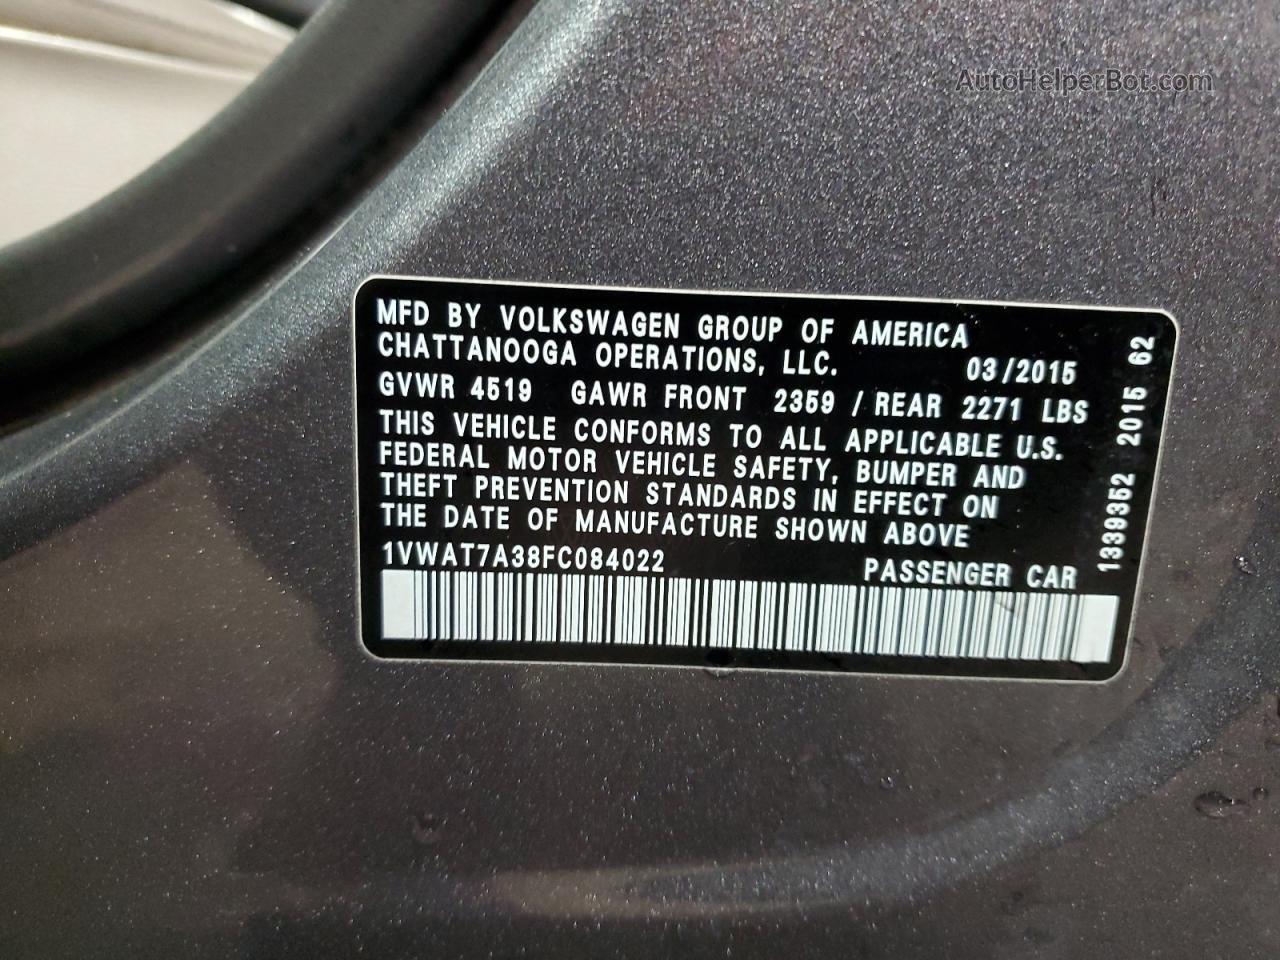 2015 Volkswagen Passat S Gray vin: 1VWAT7A38FC084022